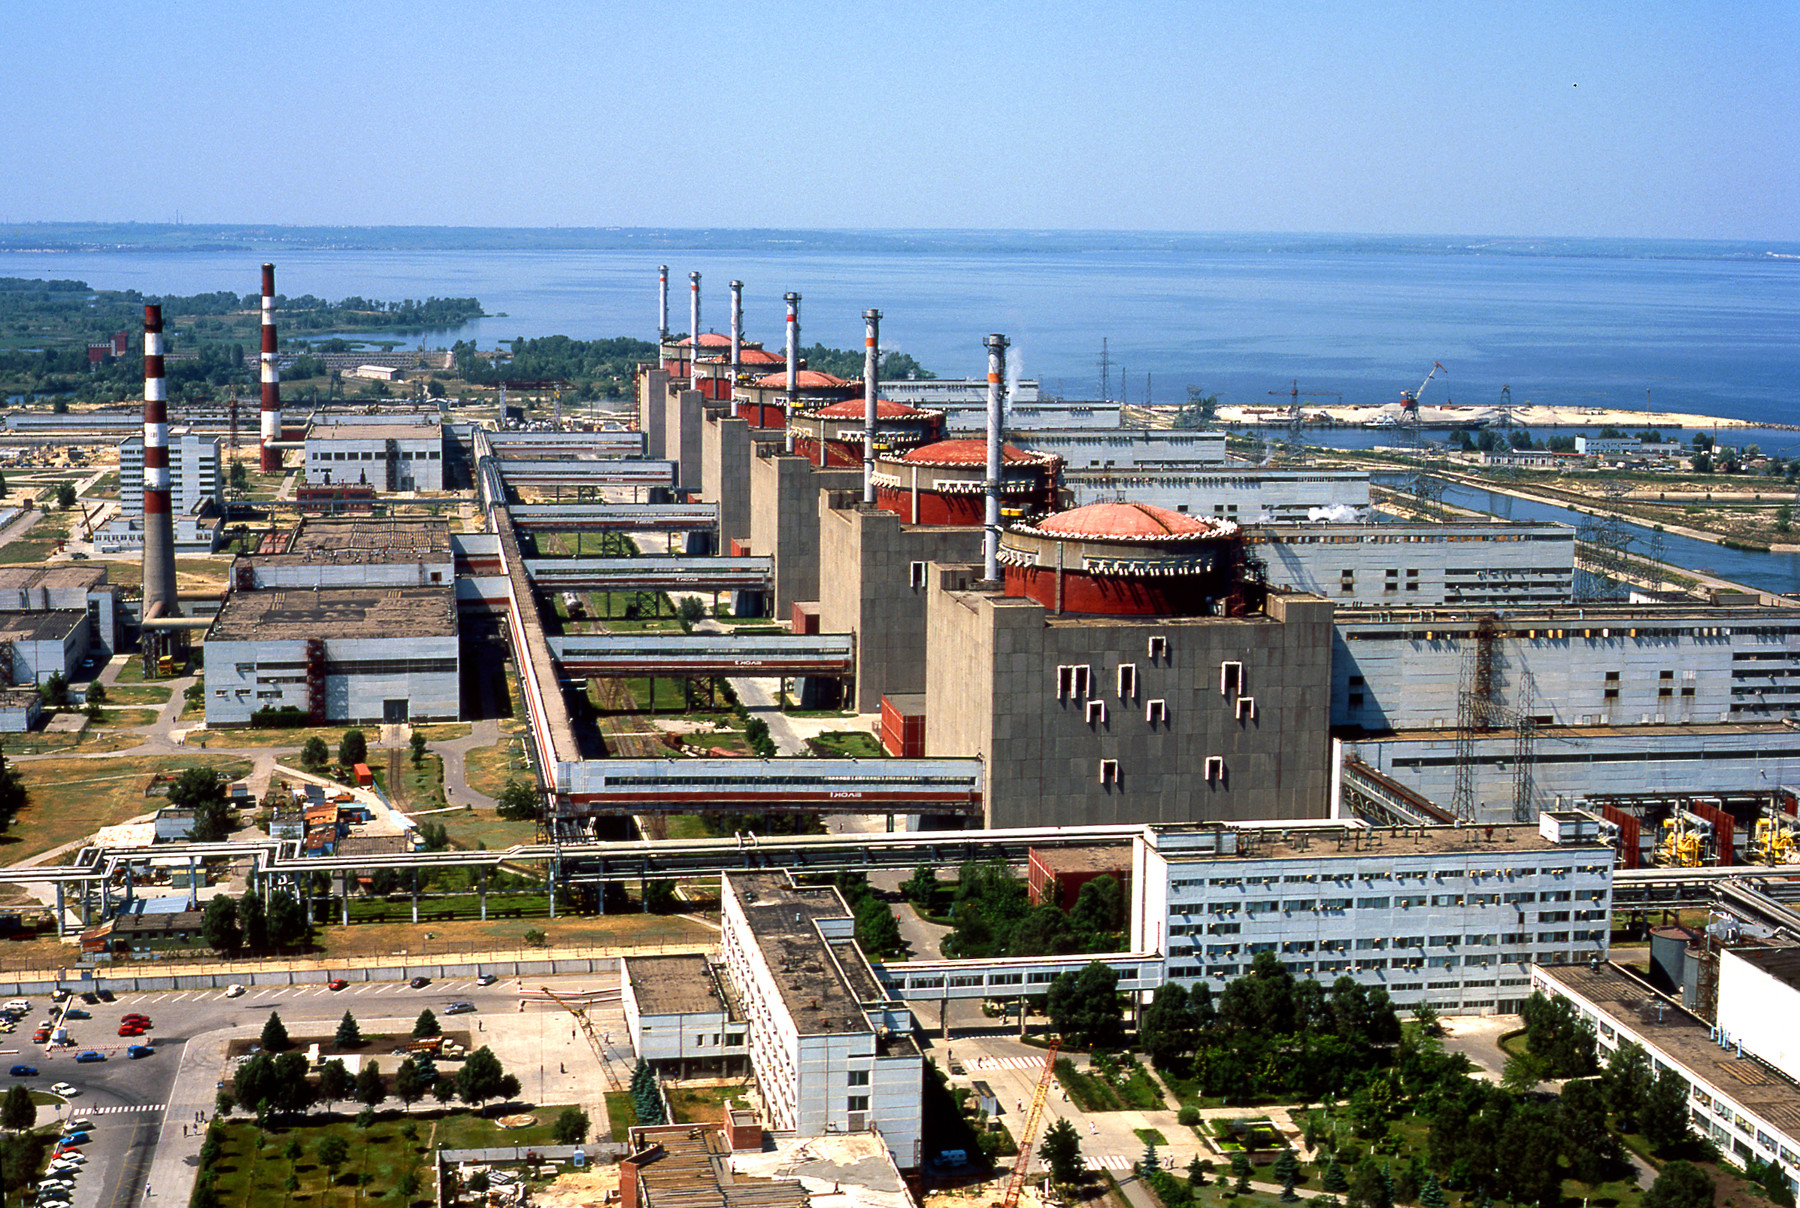 Запорожская аэс реакторы